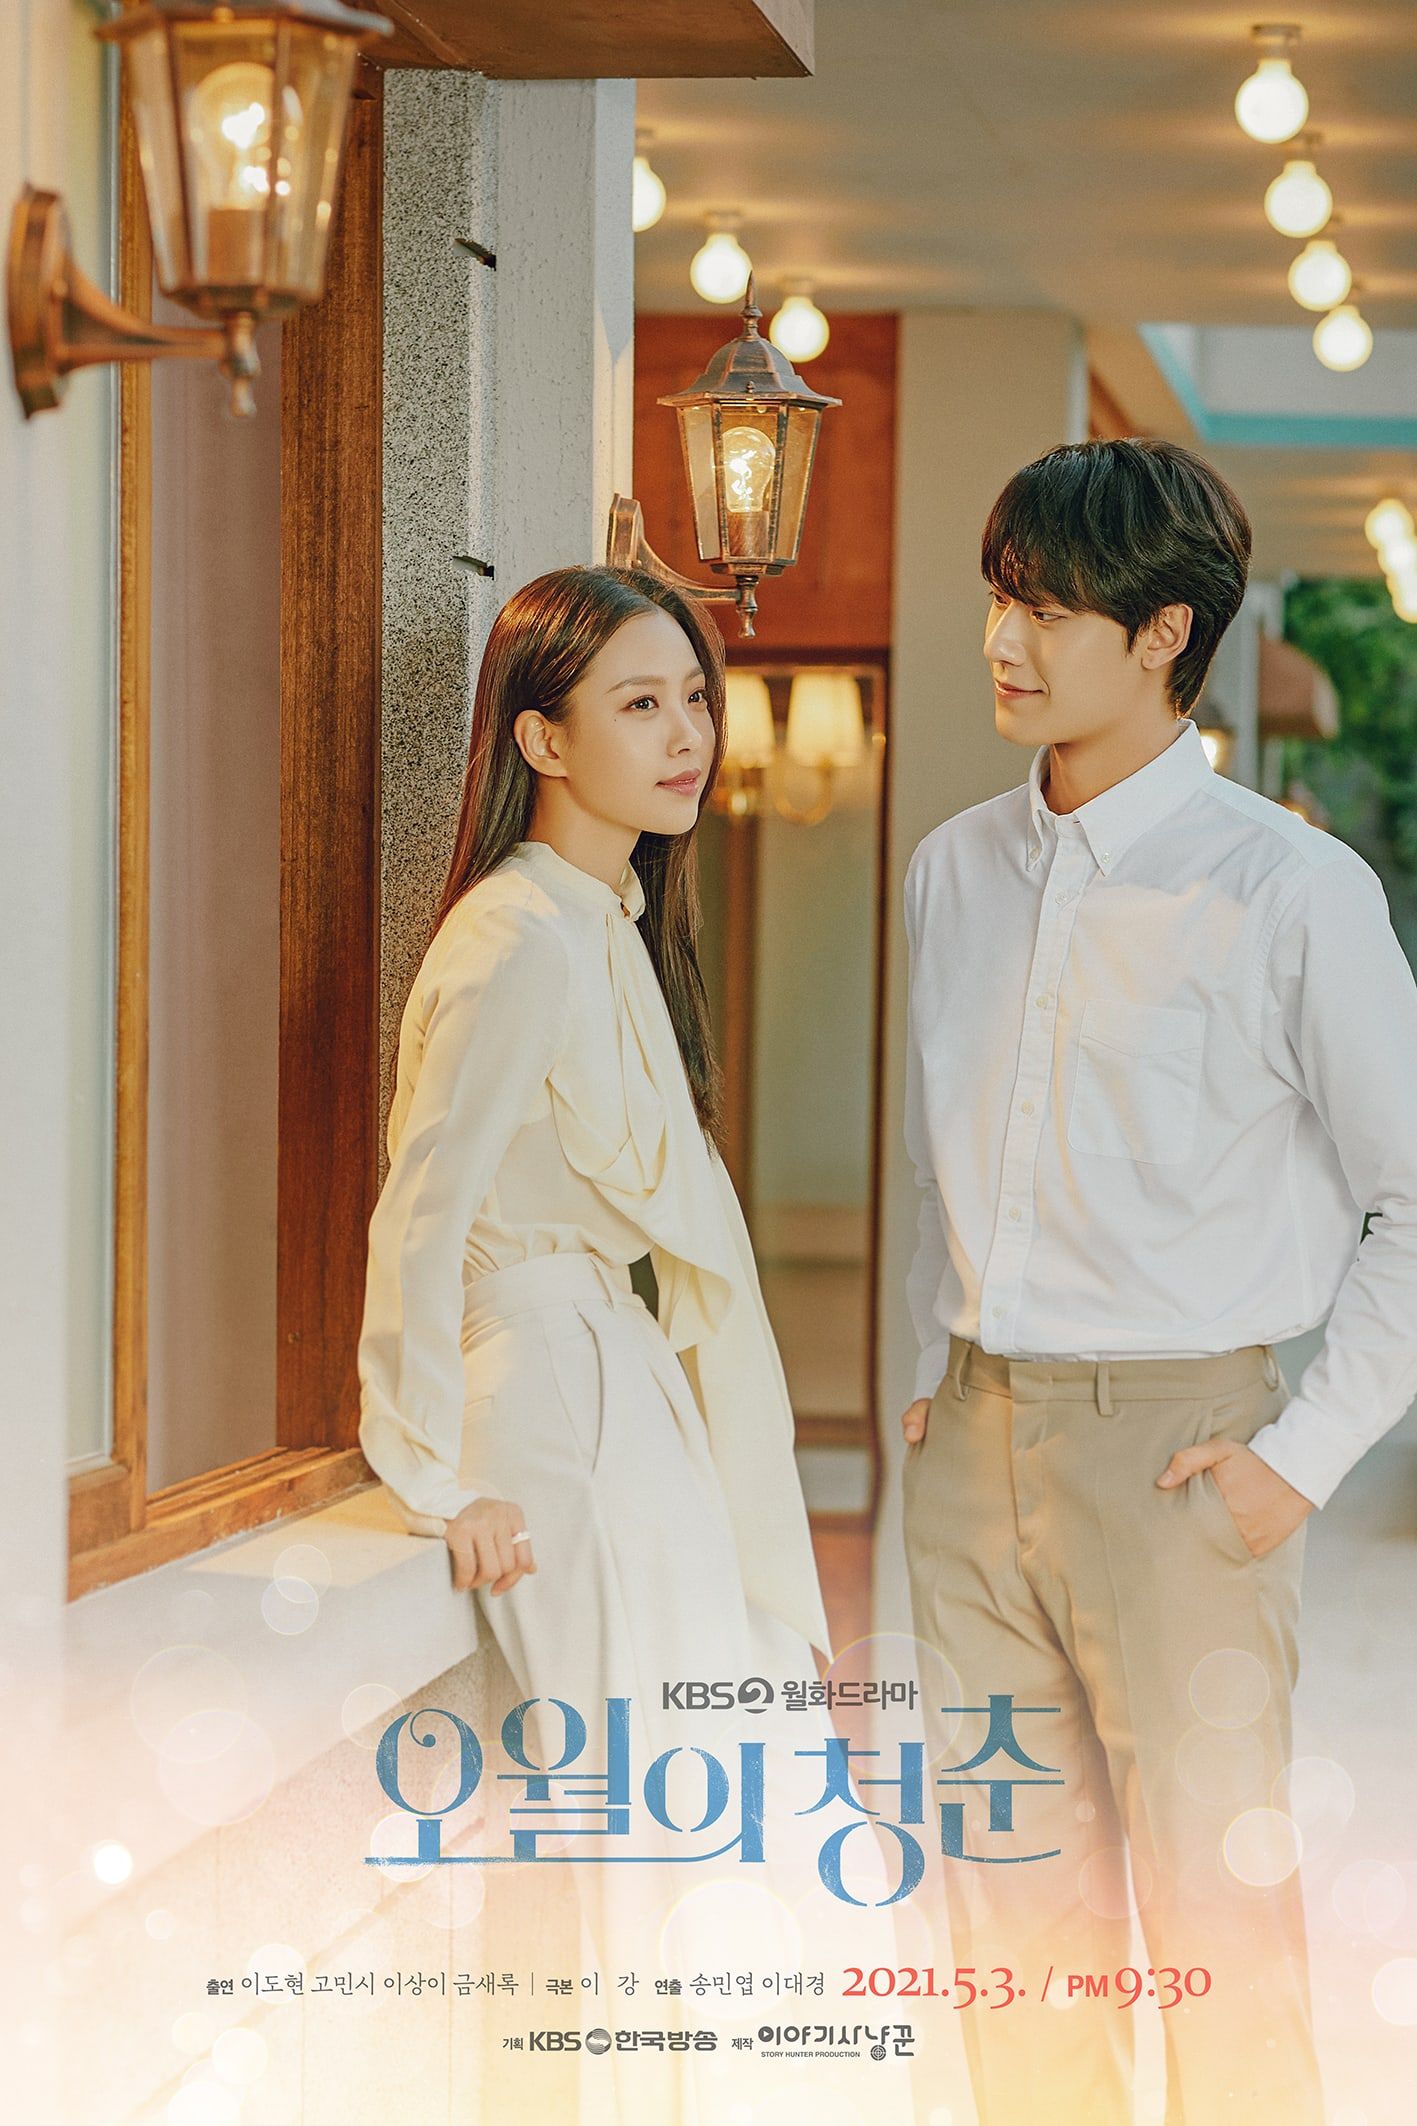 Lee Do Hyun Menatap Hangat Di Poster Go Min Si In Untuk Drama Mendatang "Youth Of May"